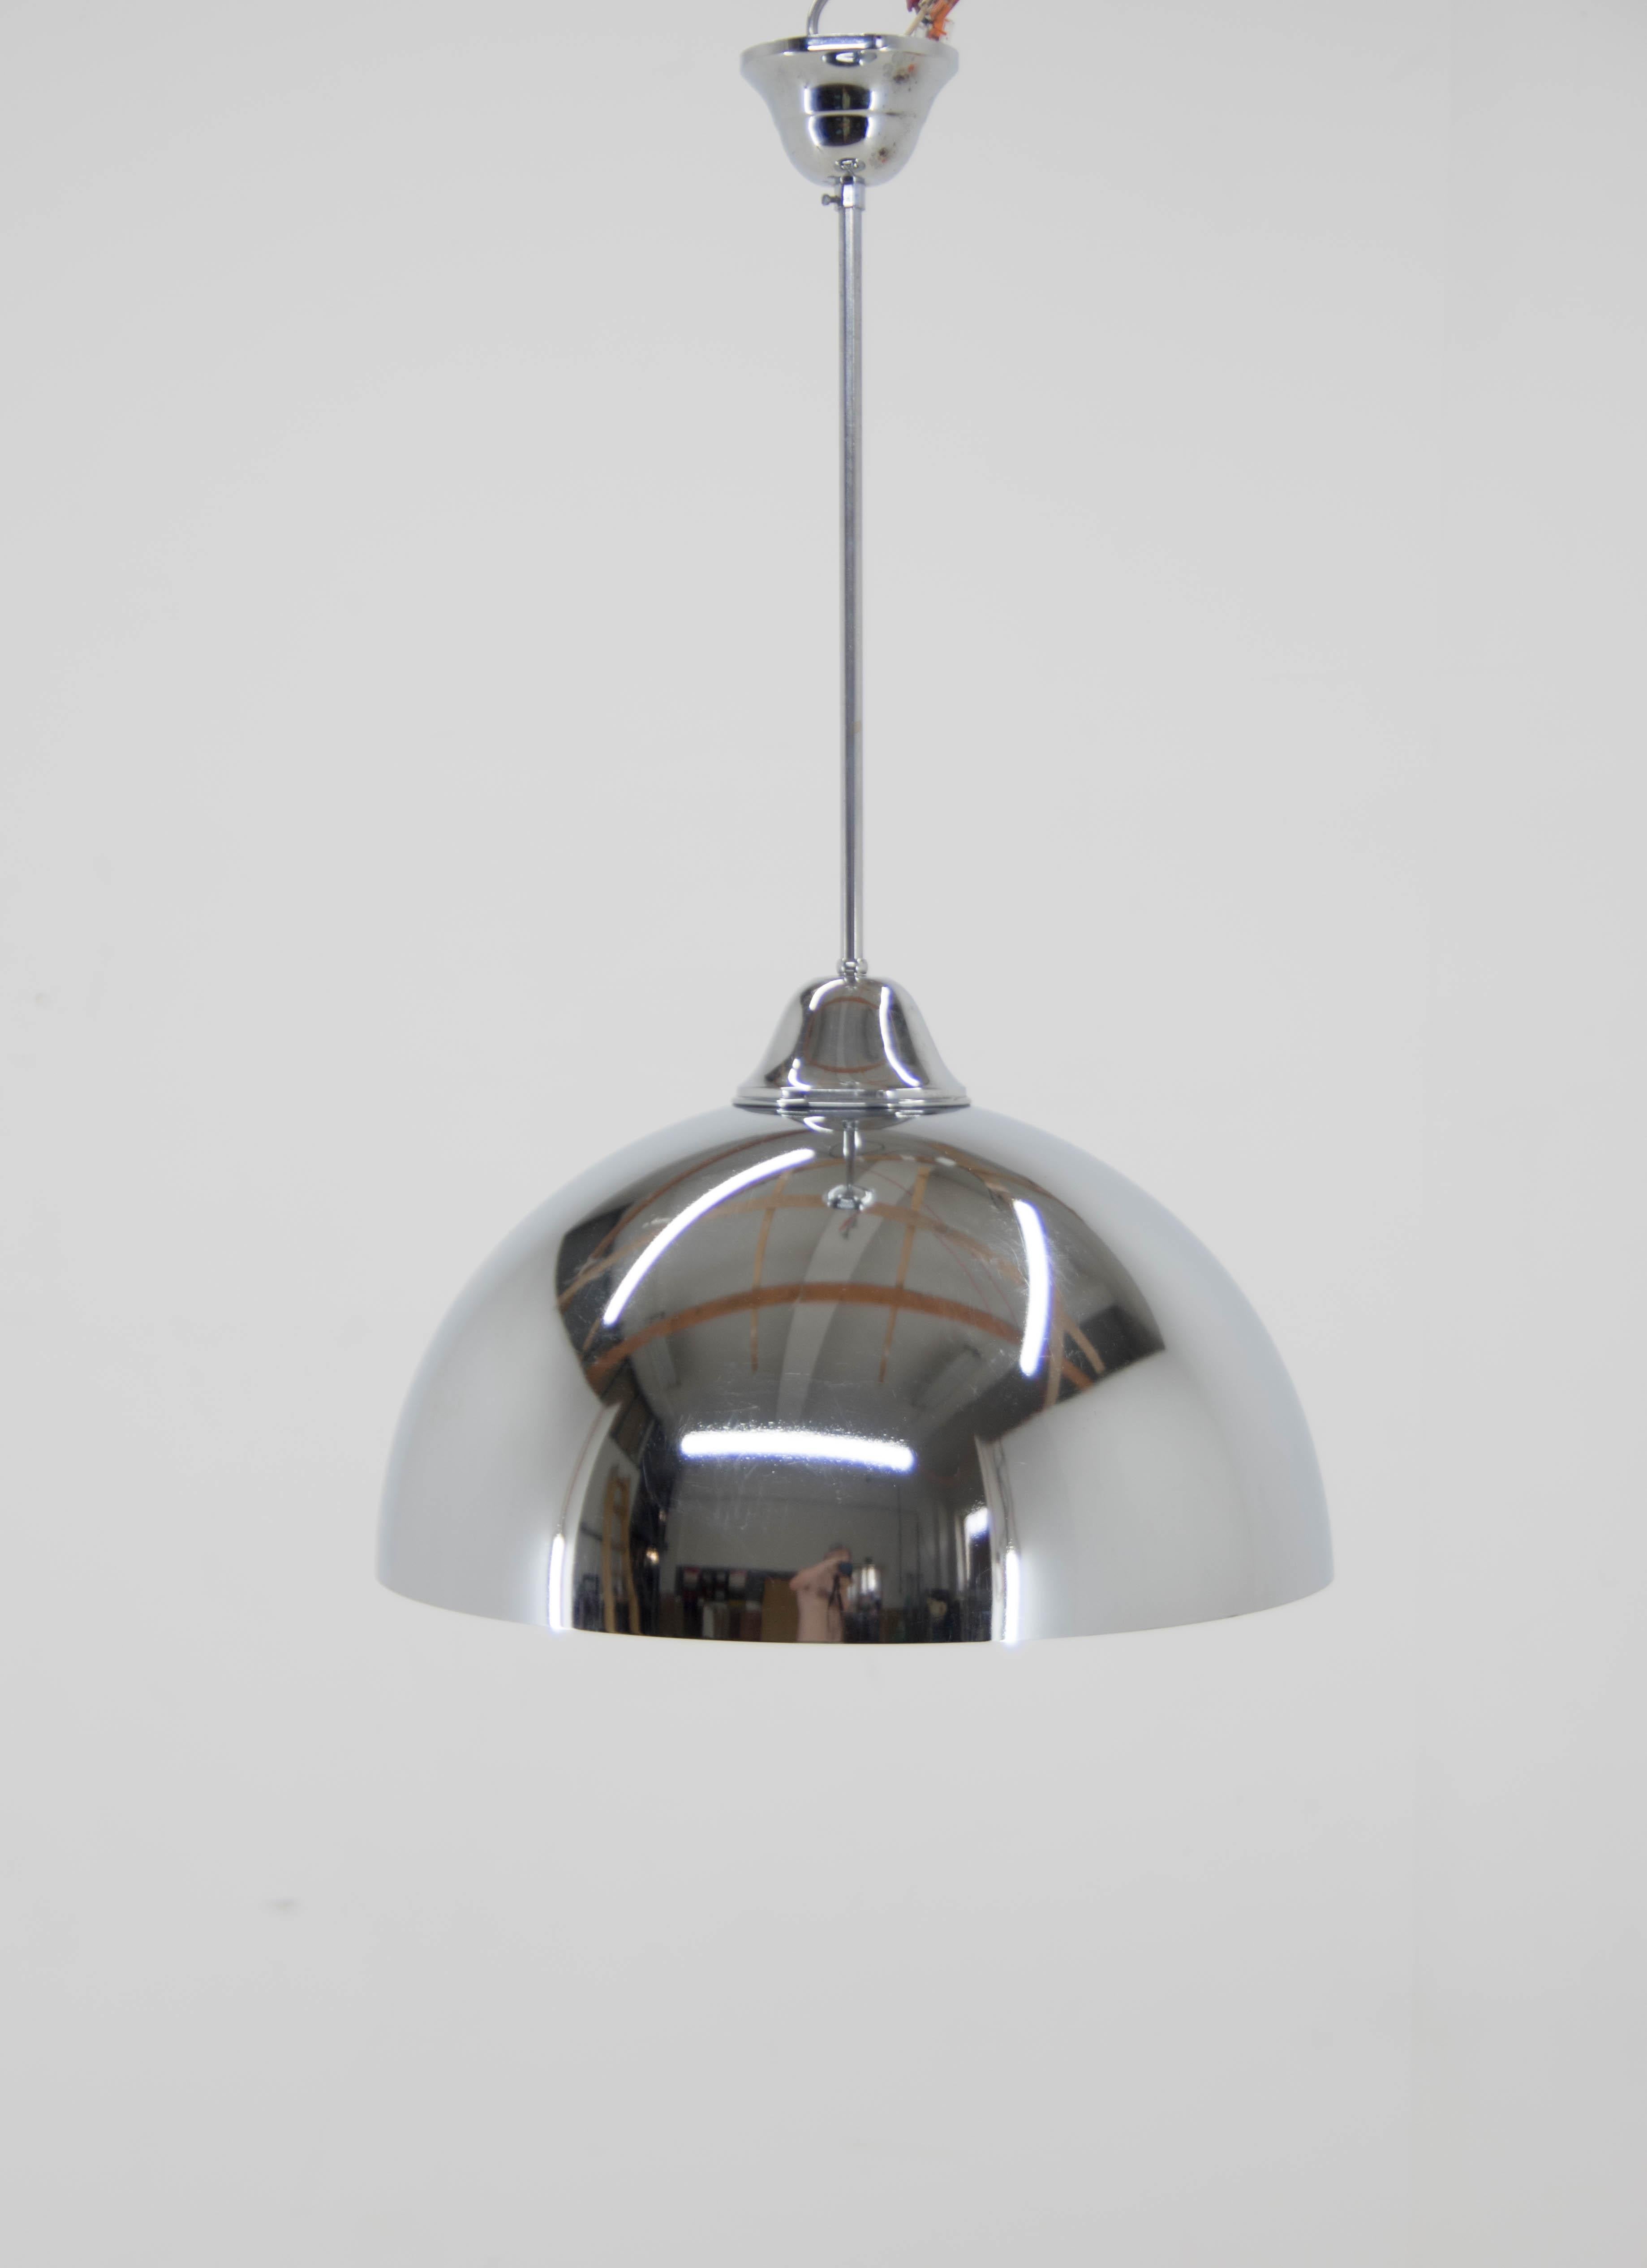 Rare pendentif Bauhaus fabriqué en Tchécoslovaquie dans les années 1930.
Design/One minimaliste.
Whiting : chromes polis, nouvelle peinture blanche, nouveau câblage :
1x100W, ampoule E25-E27
Compatible avec le câblage américain